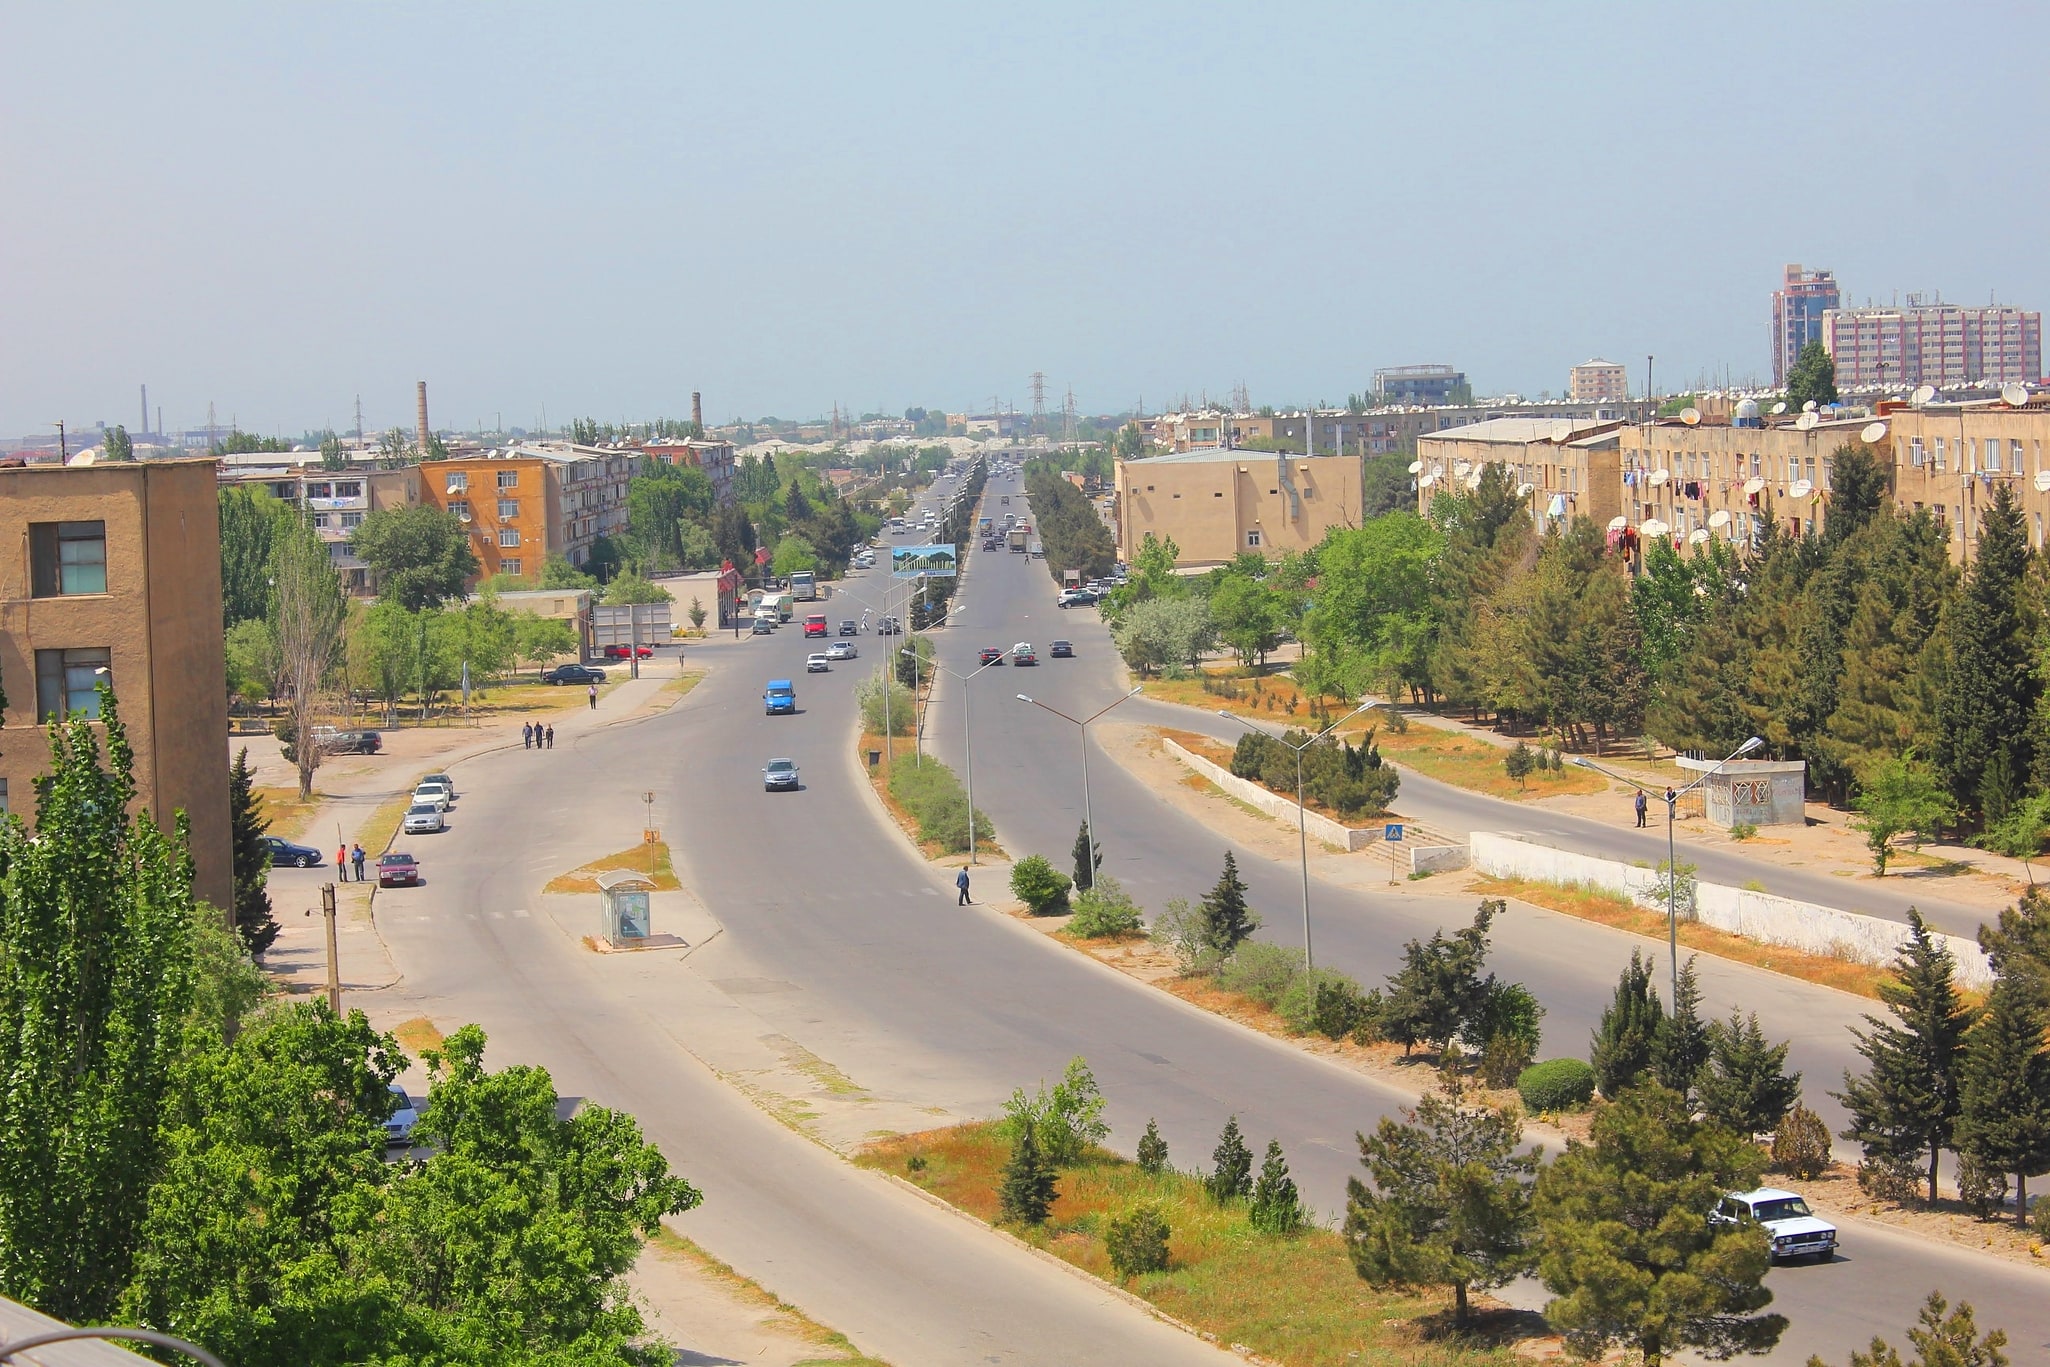 Sumqayıt, Azerbaiyán